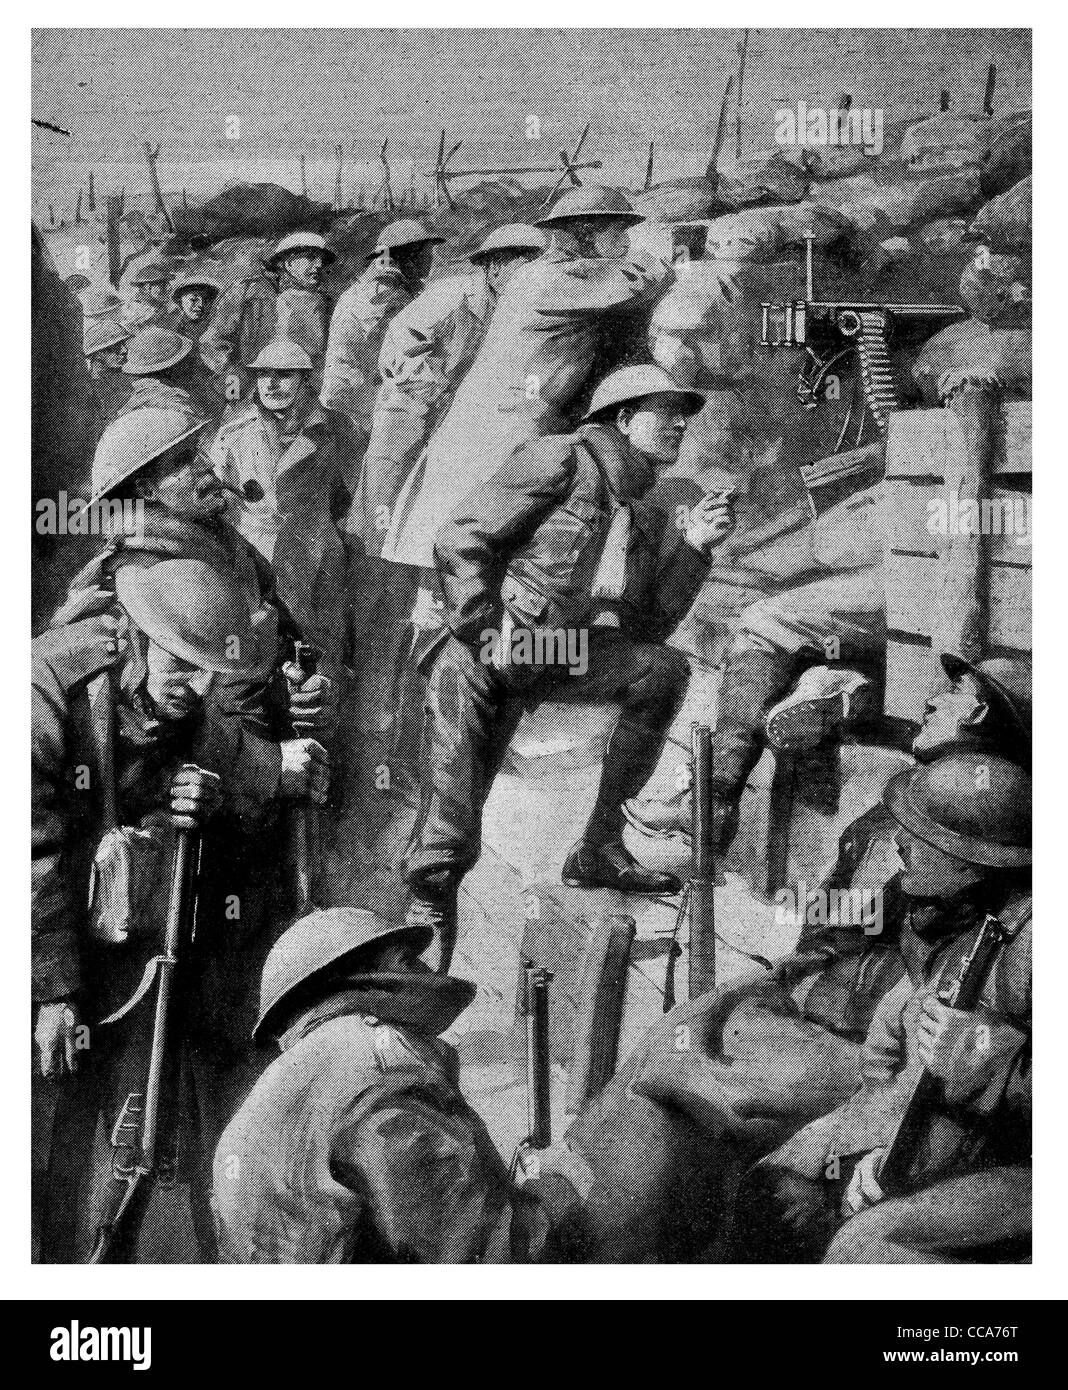 1918 Western front tranchée tranquille en attente de mitrailleuses Maxim casque fusil sac de sable uniforme la peur en attente de barbelés stealth nervous Banque D'Images